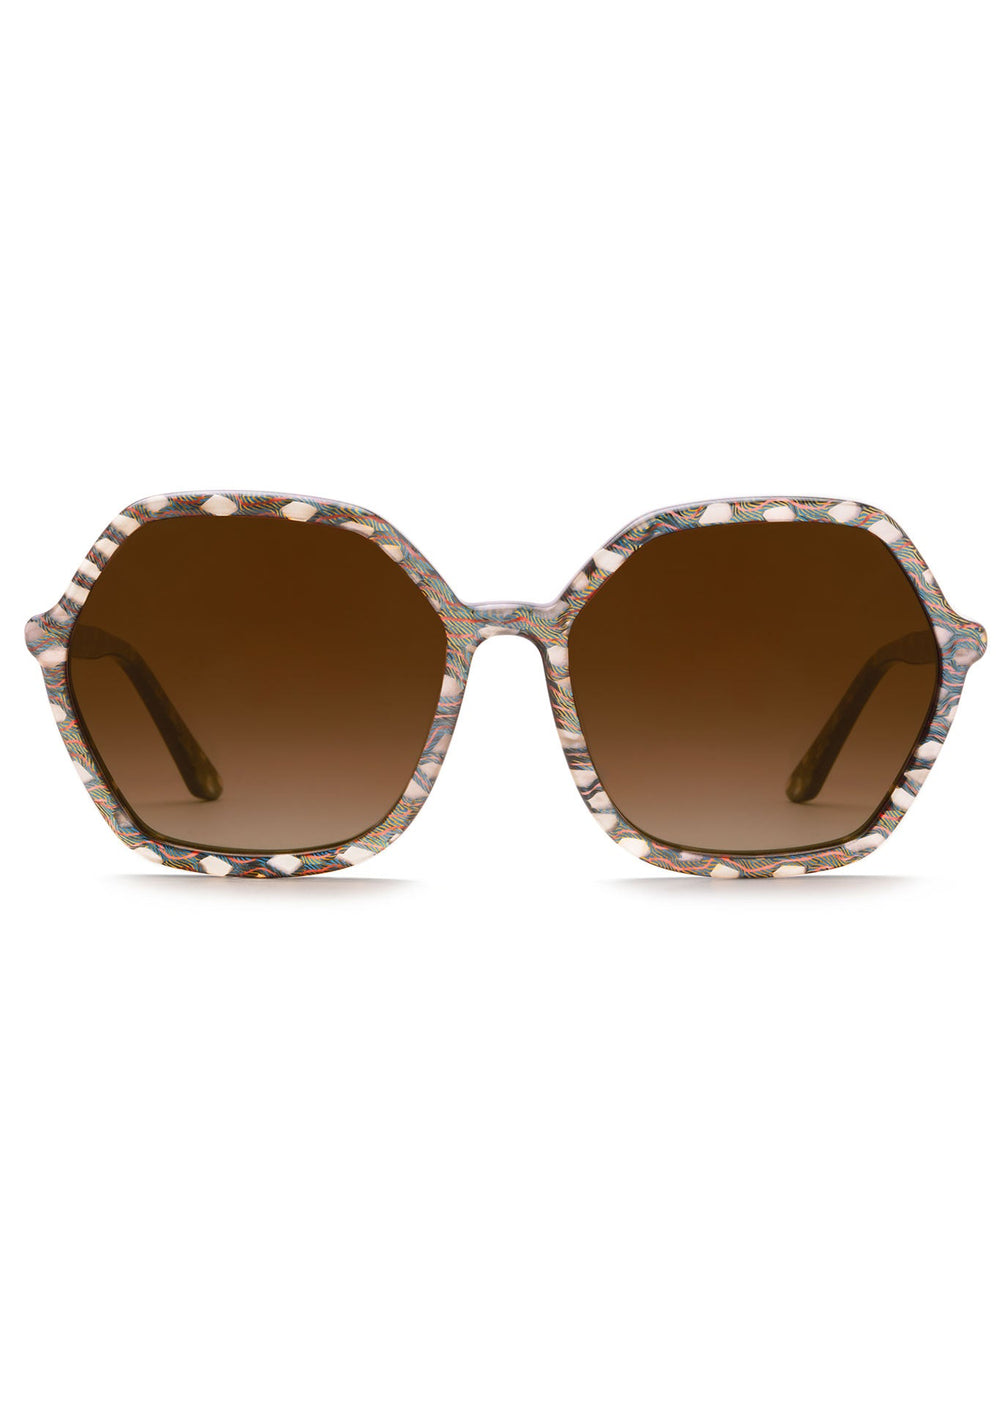 KREWE SUNGLASSES - JACKIE | Como Handcrrafted, luxury custom acetate oversized sunglasses